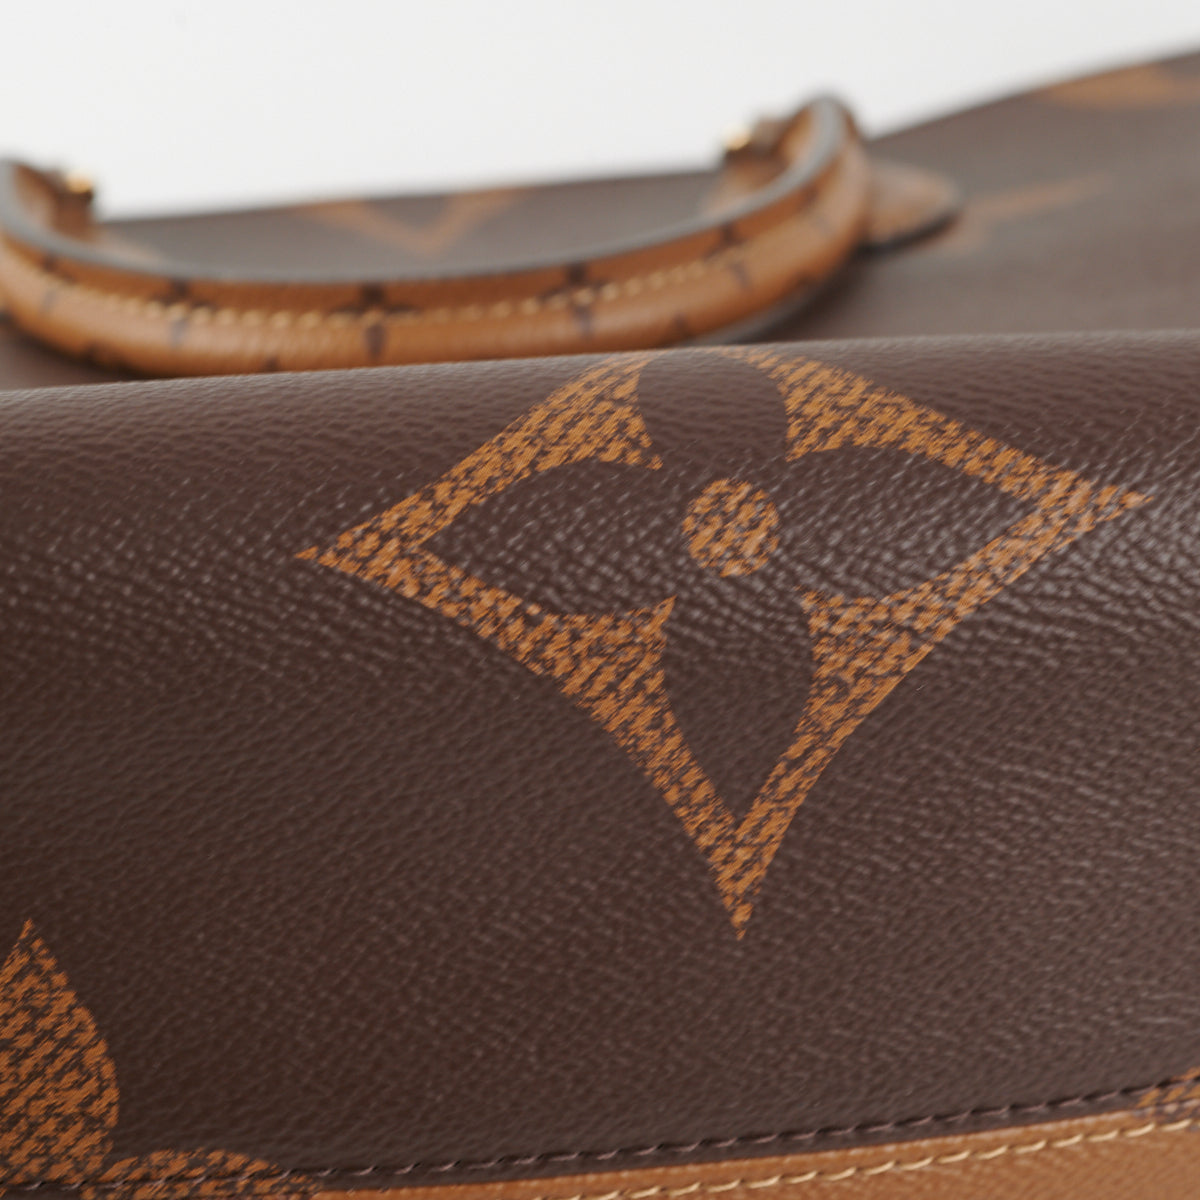 Louis Vuitton Go Shoulder bag 372088